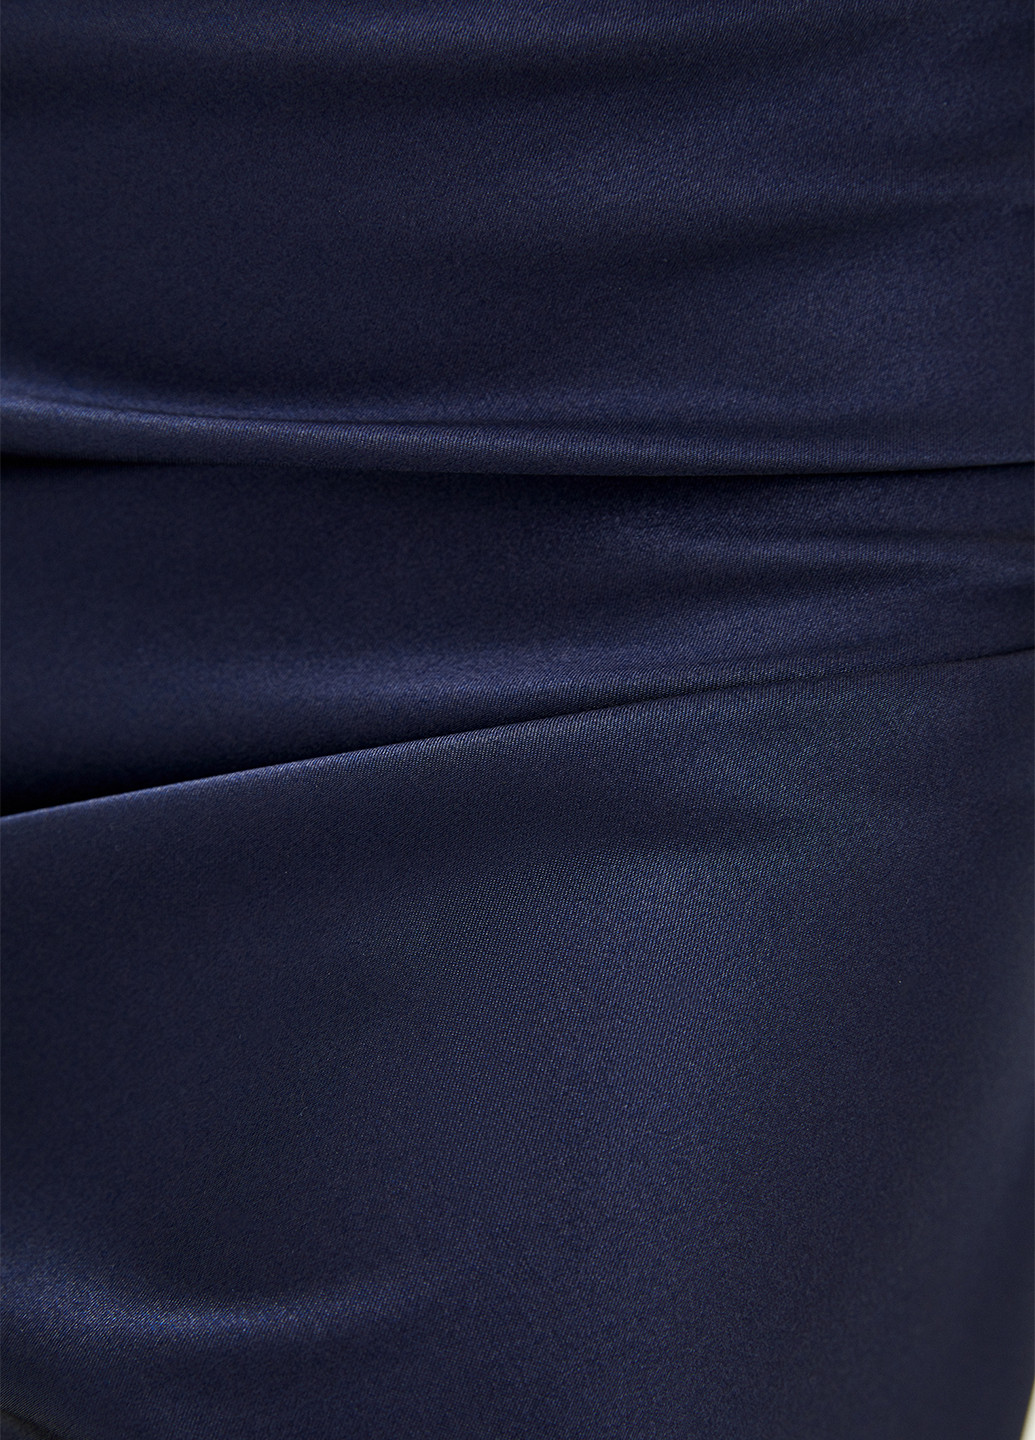 Синяя кэжуал однотонная юбка One Two dress а-силуэта (трапеция)